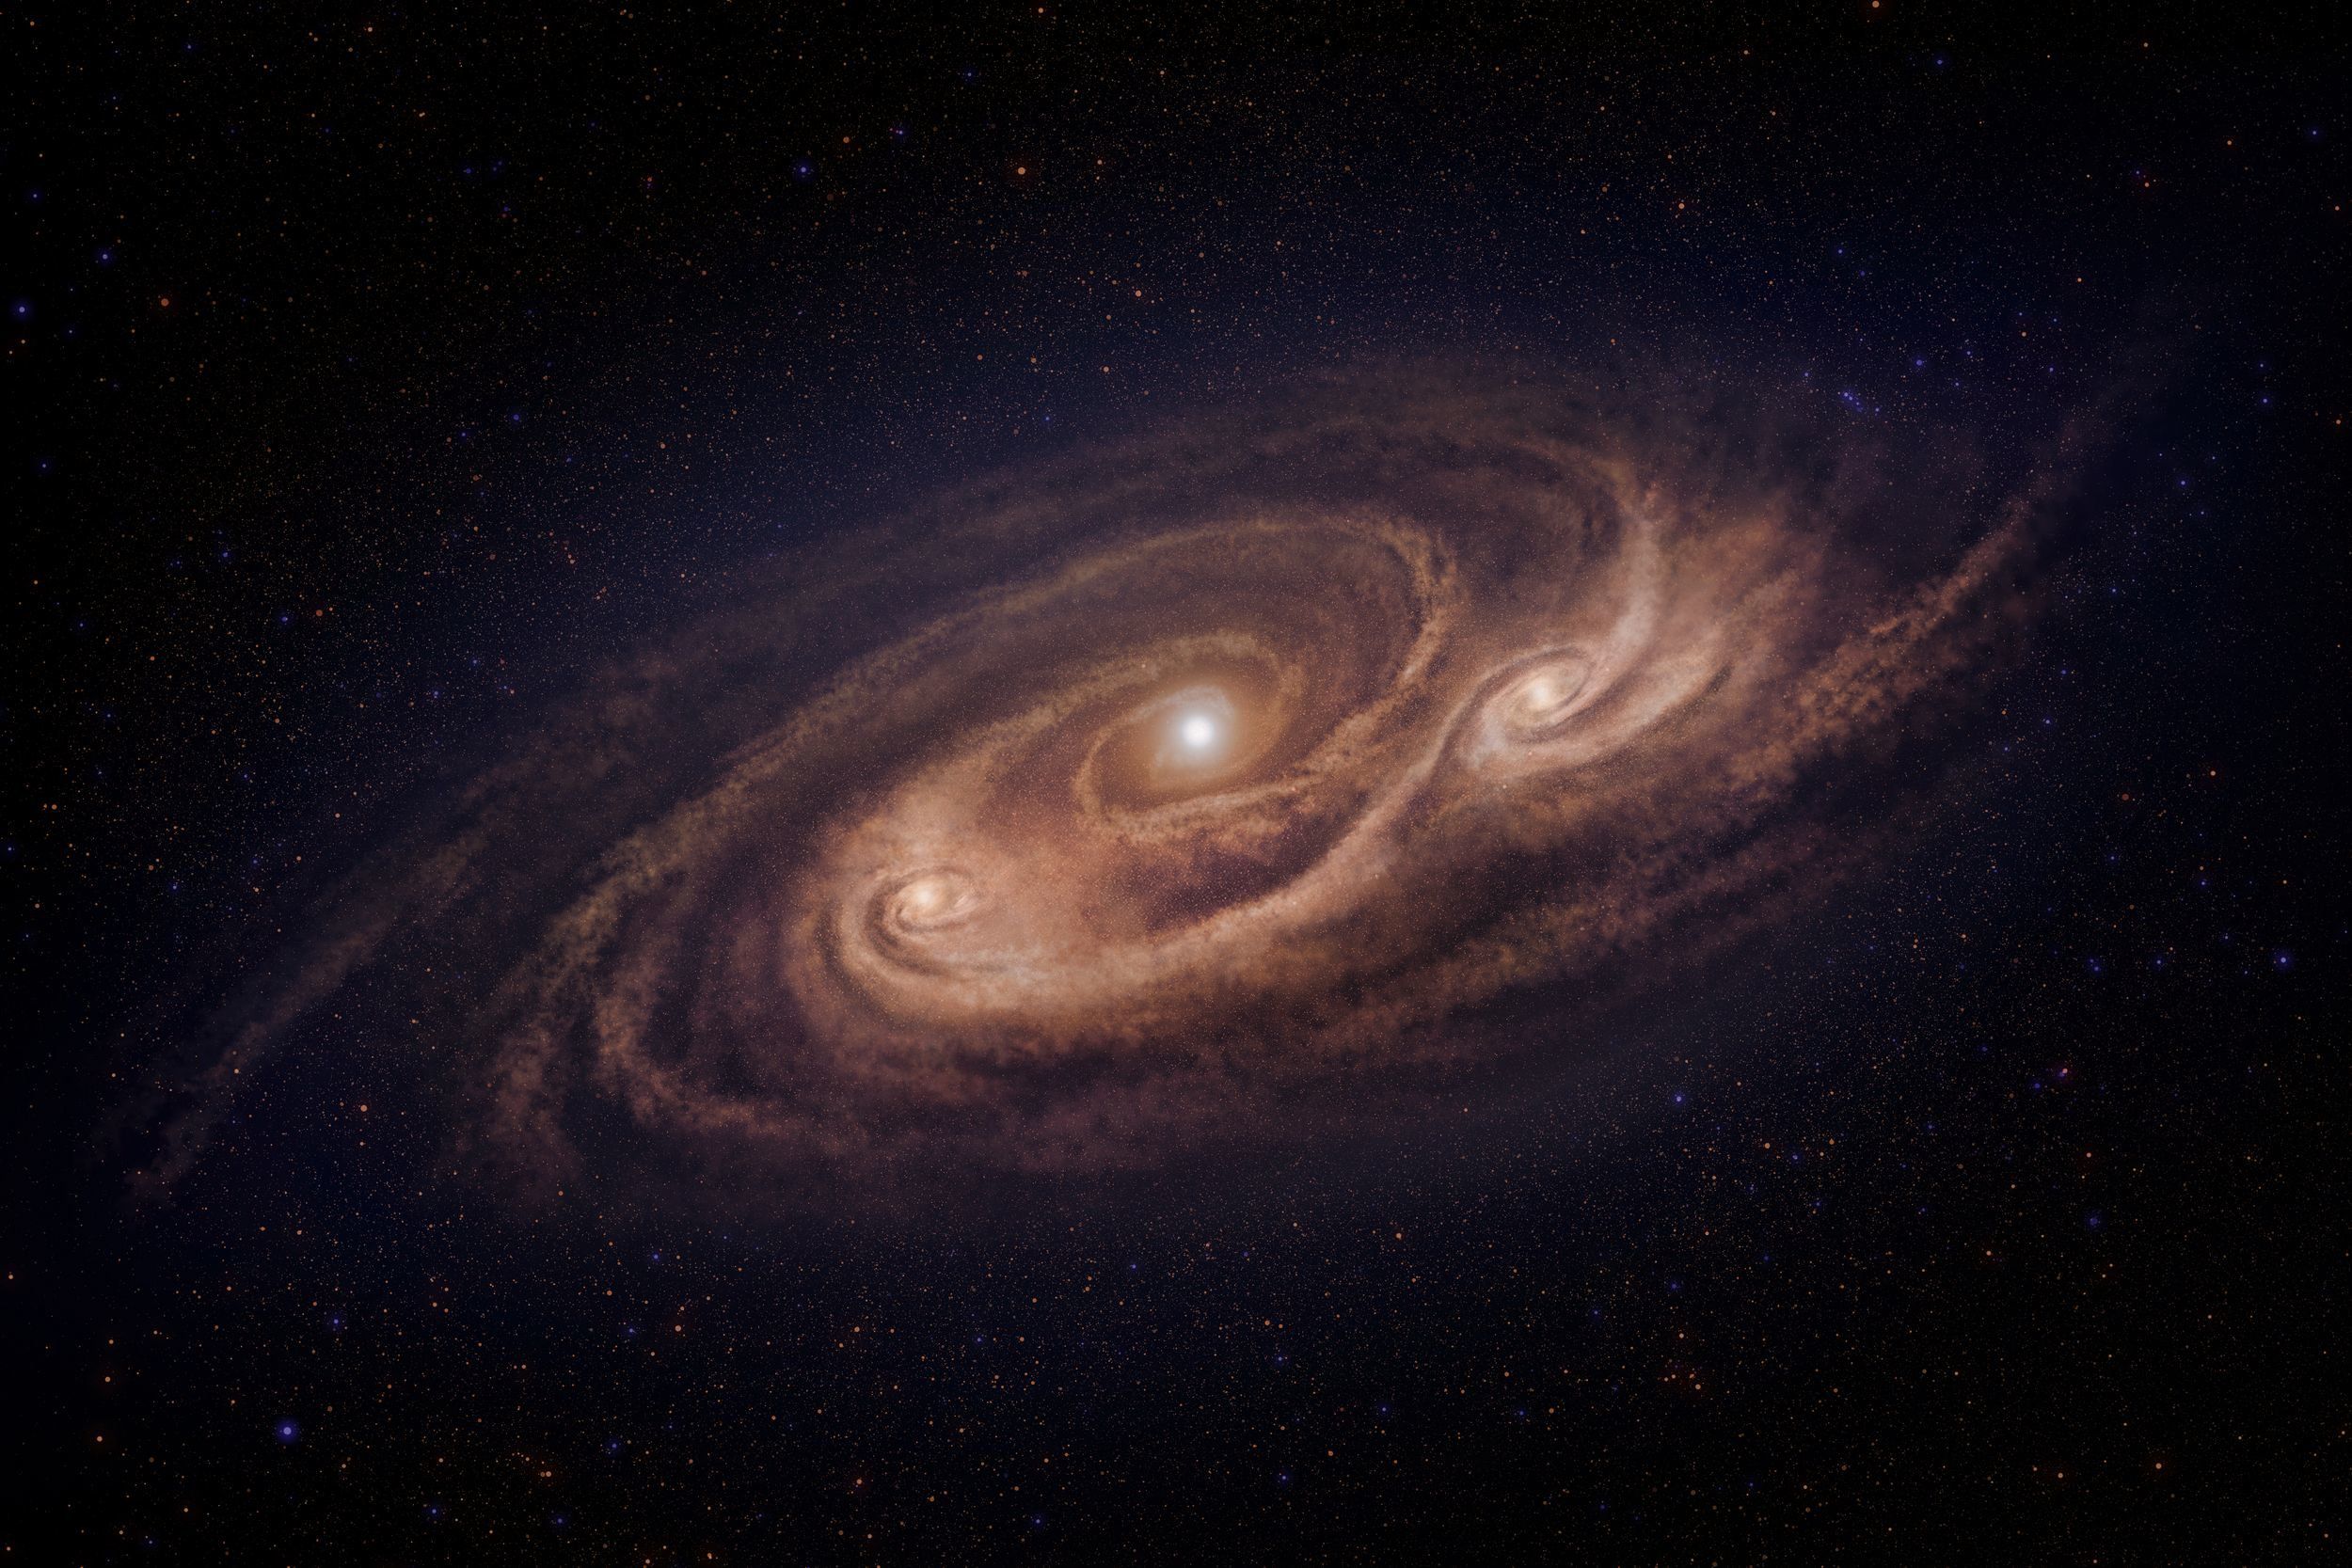 Гигантская звездная система. GN-z11 Галактика. Космос Галактика Млечный путь. Cosmos-Aztec-1. Звездная система в галактике Млечный путь.